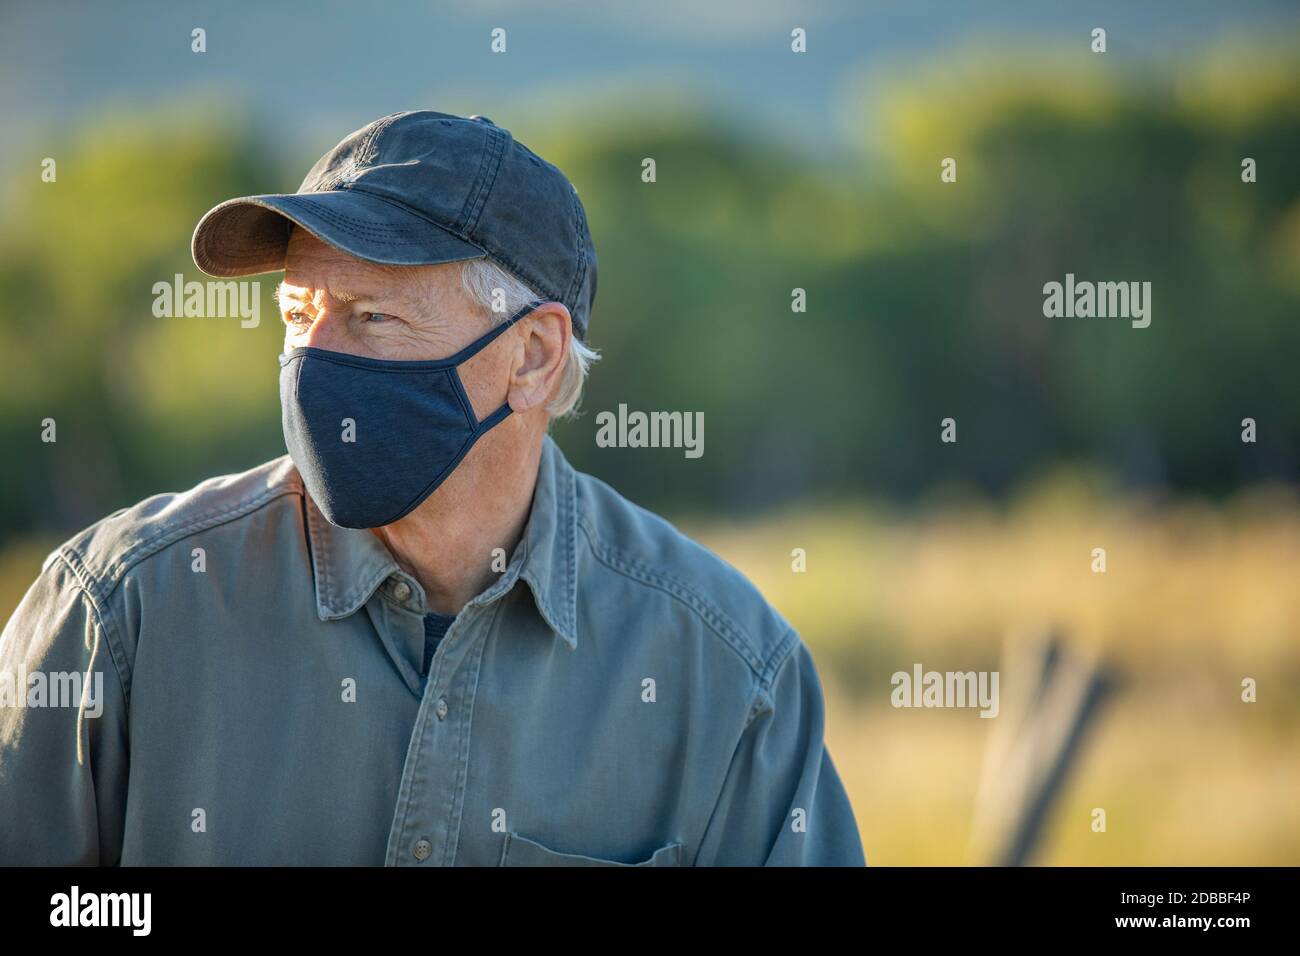 Etats-Unis, Idaho, Bellevue, Portrait de fermier dans le masque facial Banque D'Images